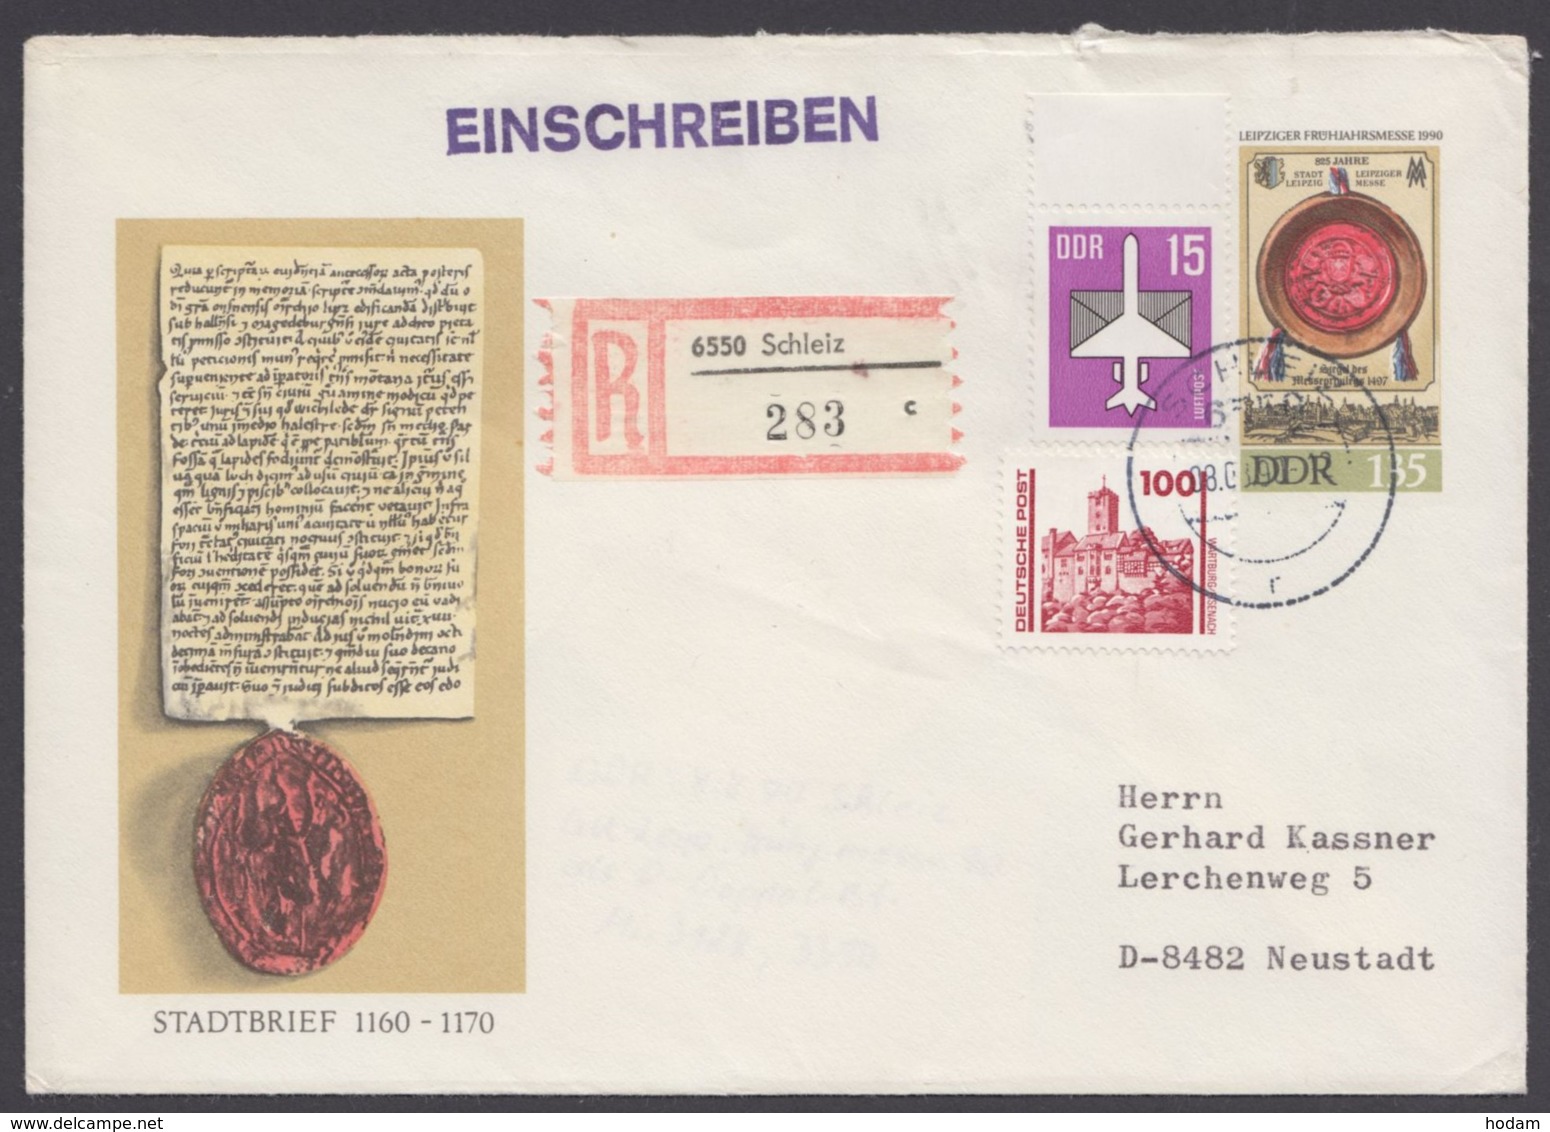 Mi-Nr. U11, Als R- Brief Mit Pass. Zusatzfr., 8.8.90 - Covers - Used